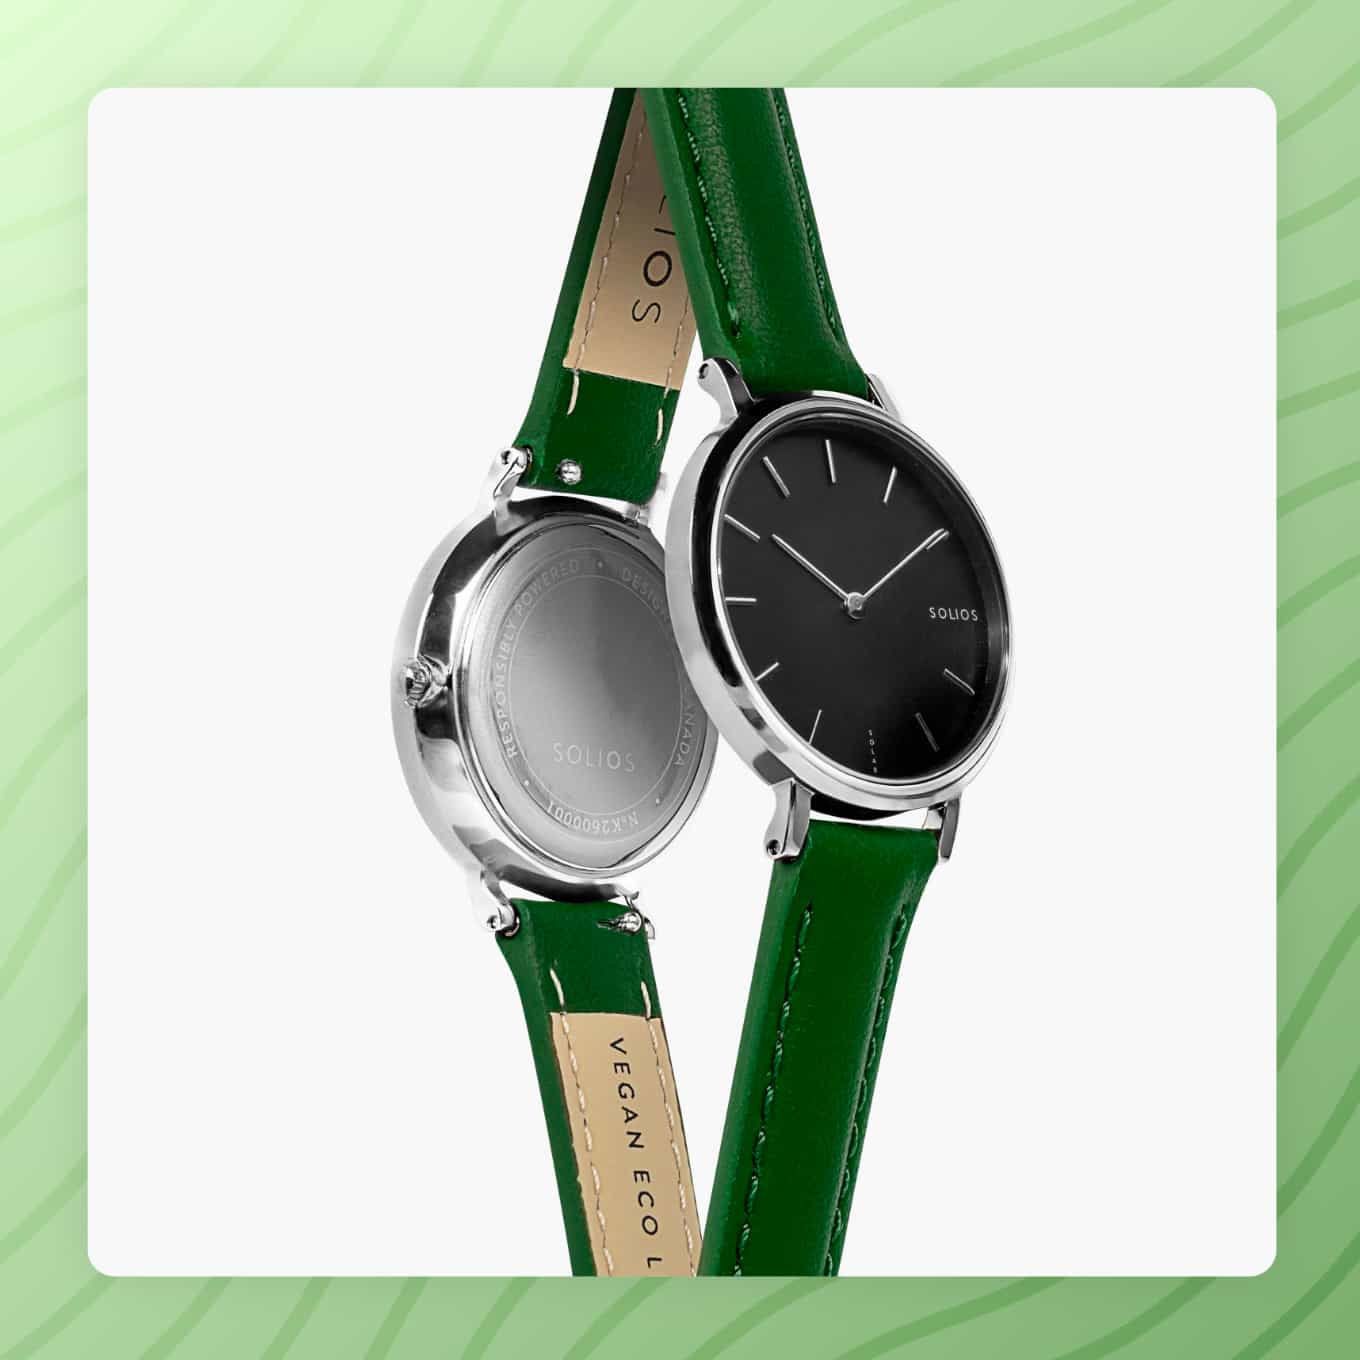 Een strak horloge van Solios met een groene horlogeband